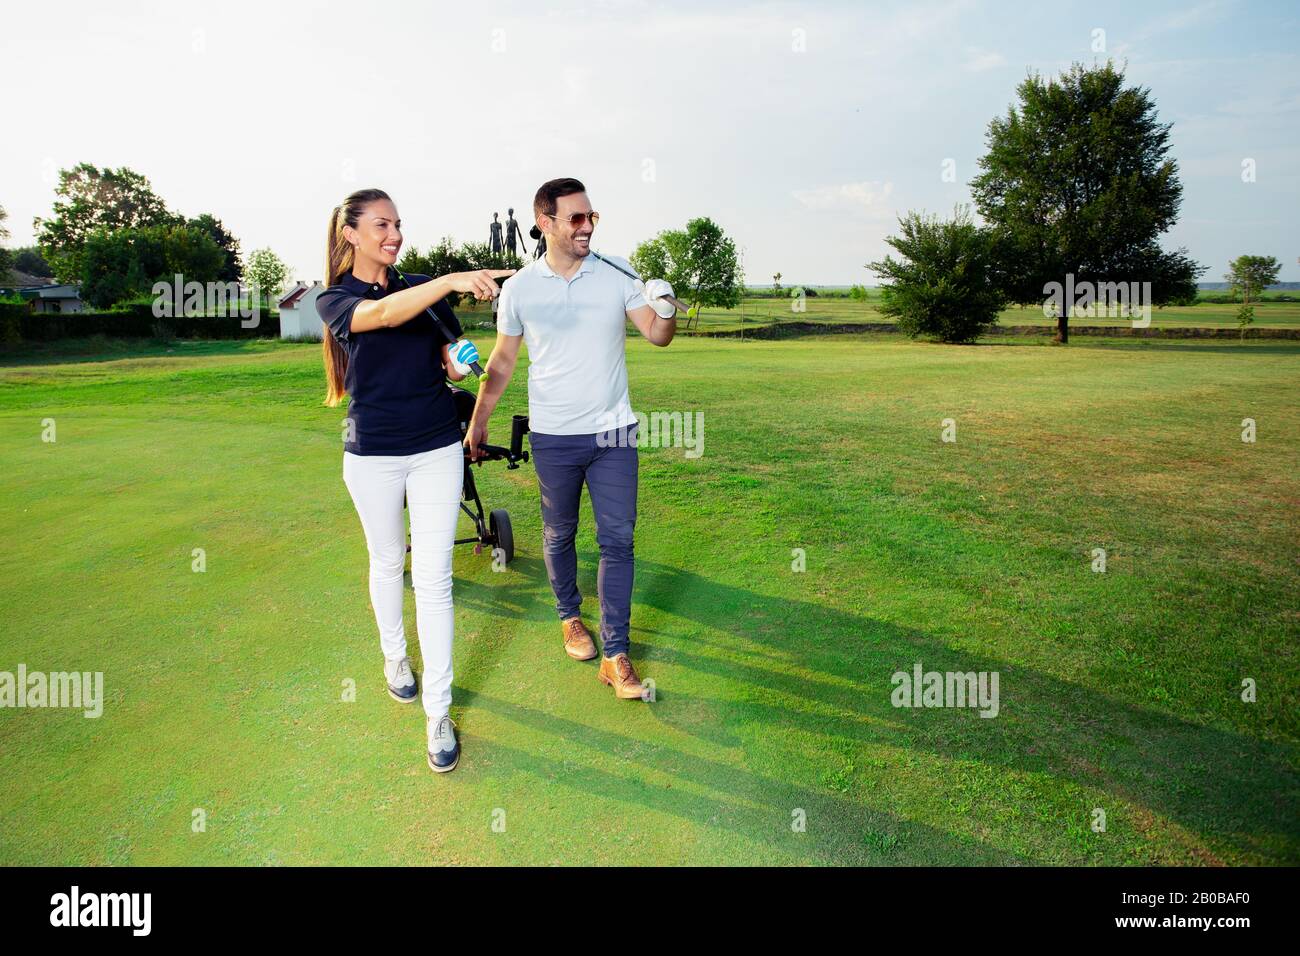 Schöner weiblicher Golfspieler und gutaussehender männlicher Spieler laufen auf einem Golfplatz. Stockfoto